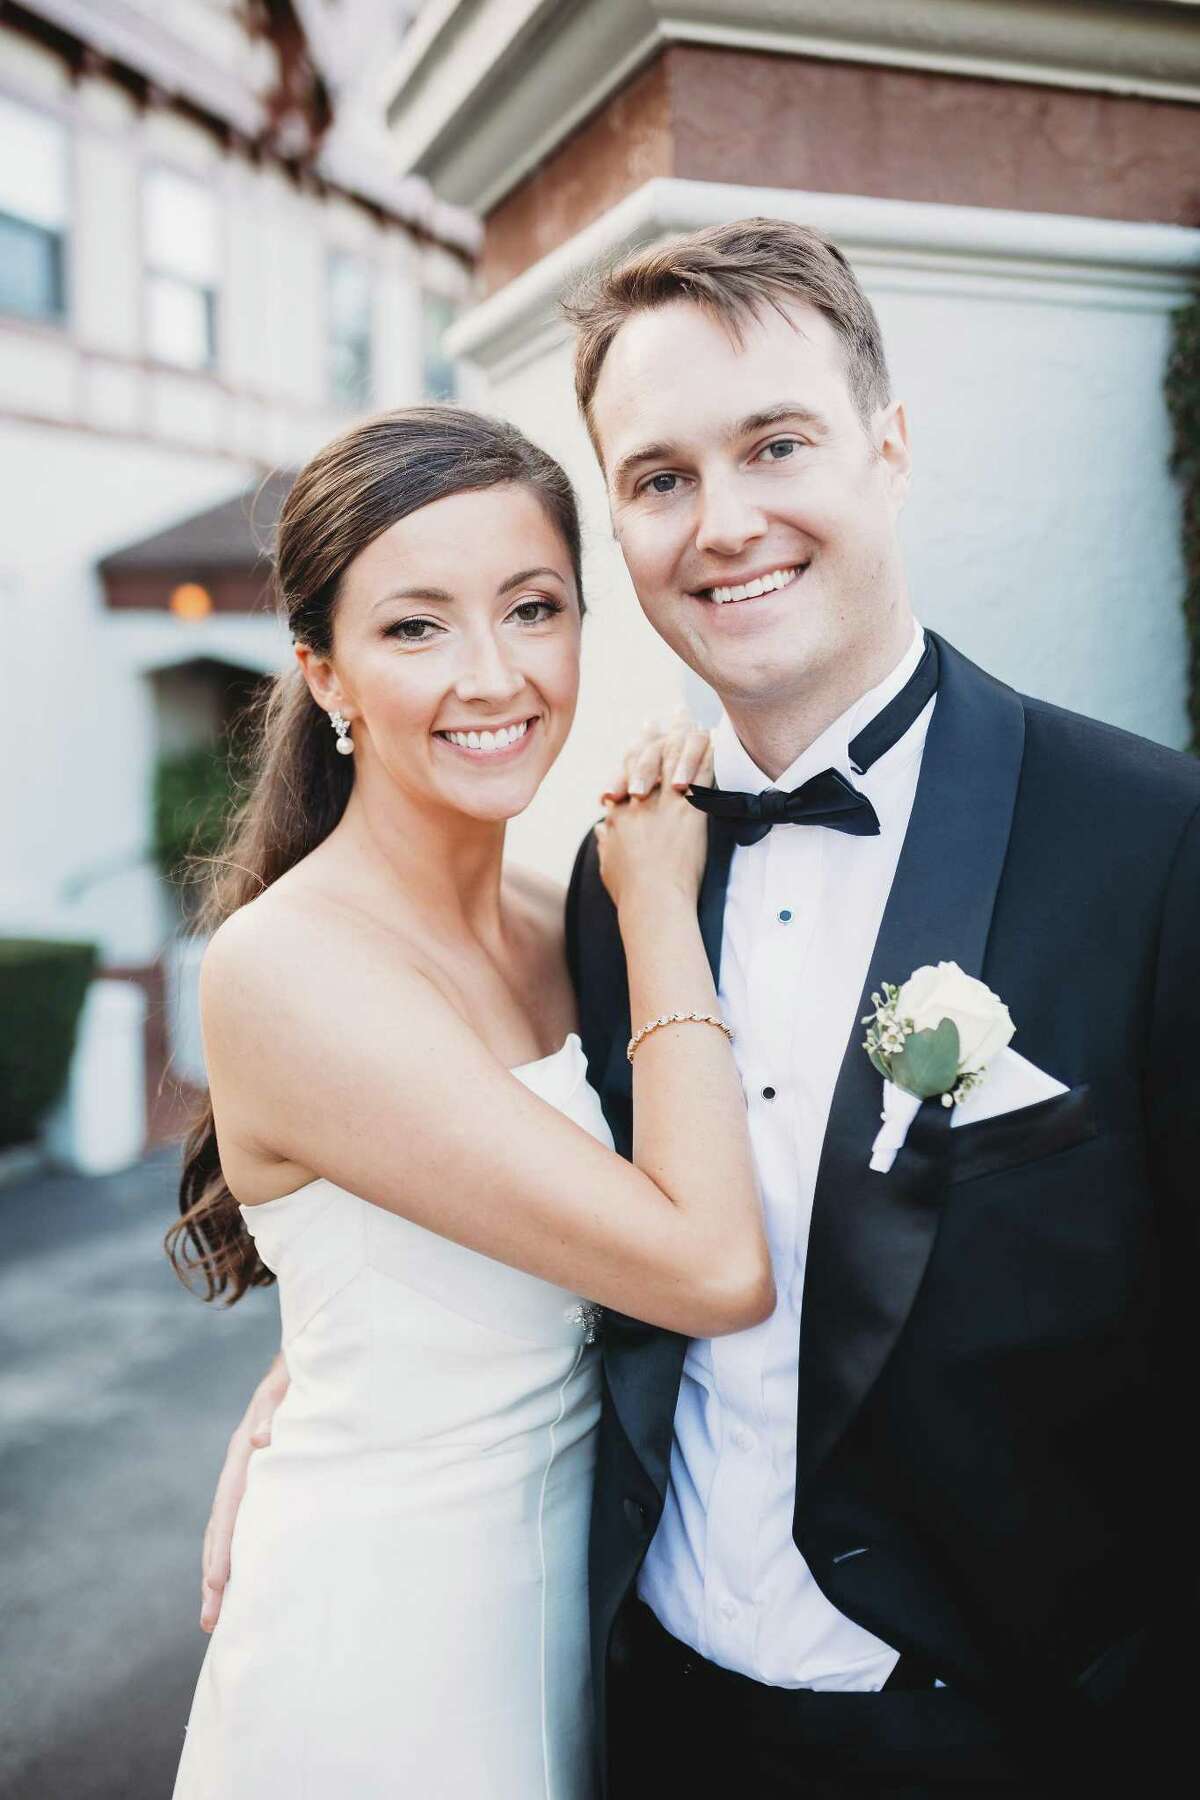 Jessica A. Koontz and Hunt E. Barada were married on September 30, 2017.